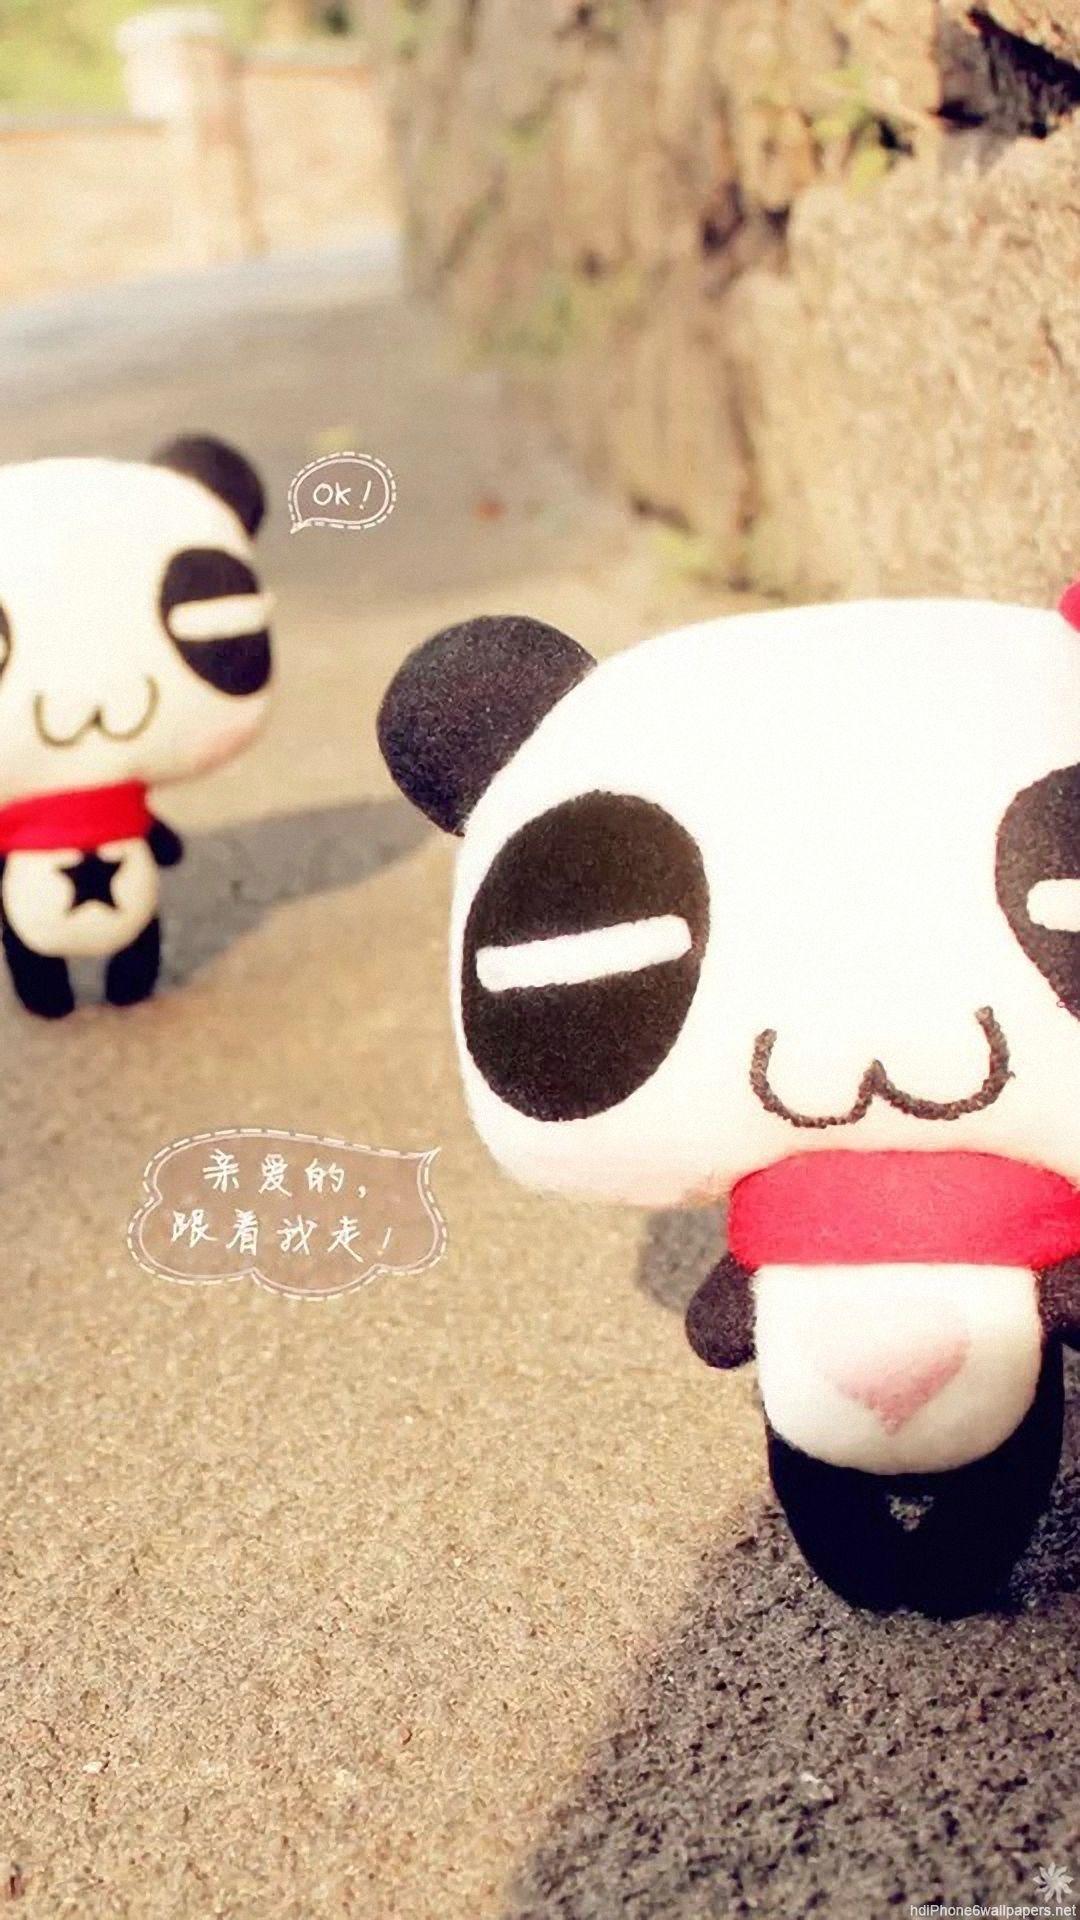 panda cute love iPhone 6 wallpaper HD and 1080P 6 Plus Wallpaper